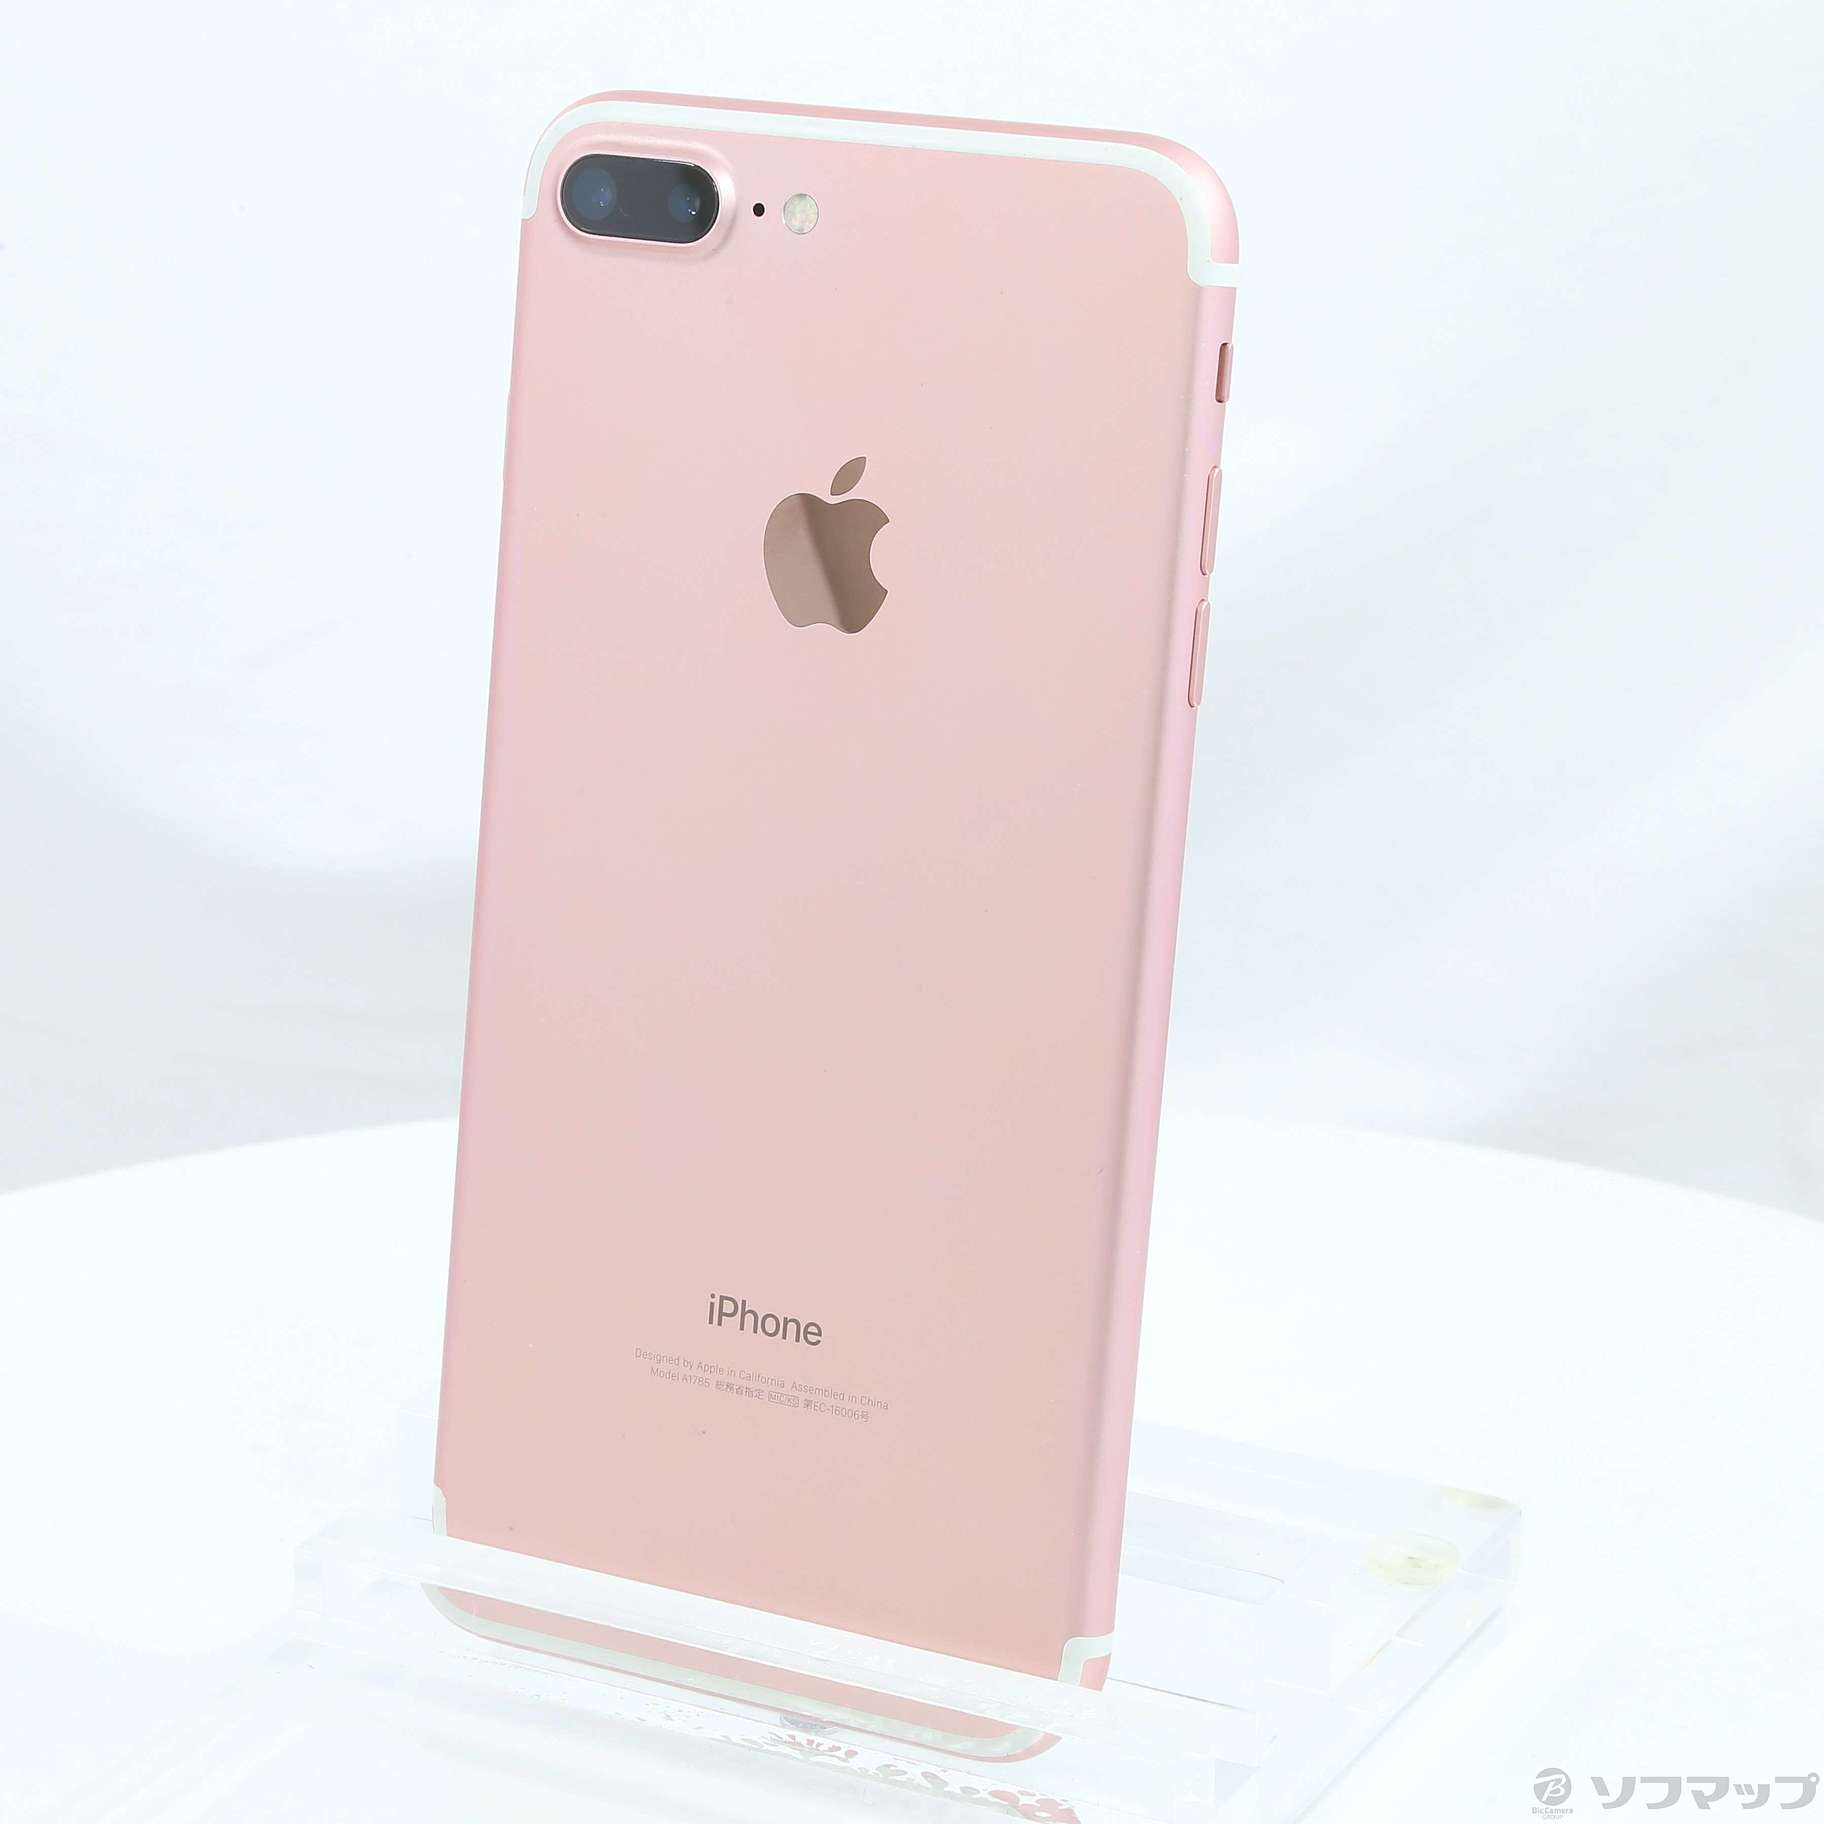 iPhone 7Plus RoseGold 128GB SIMフリー 1197 - rehda.com